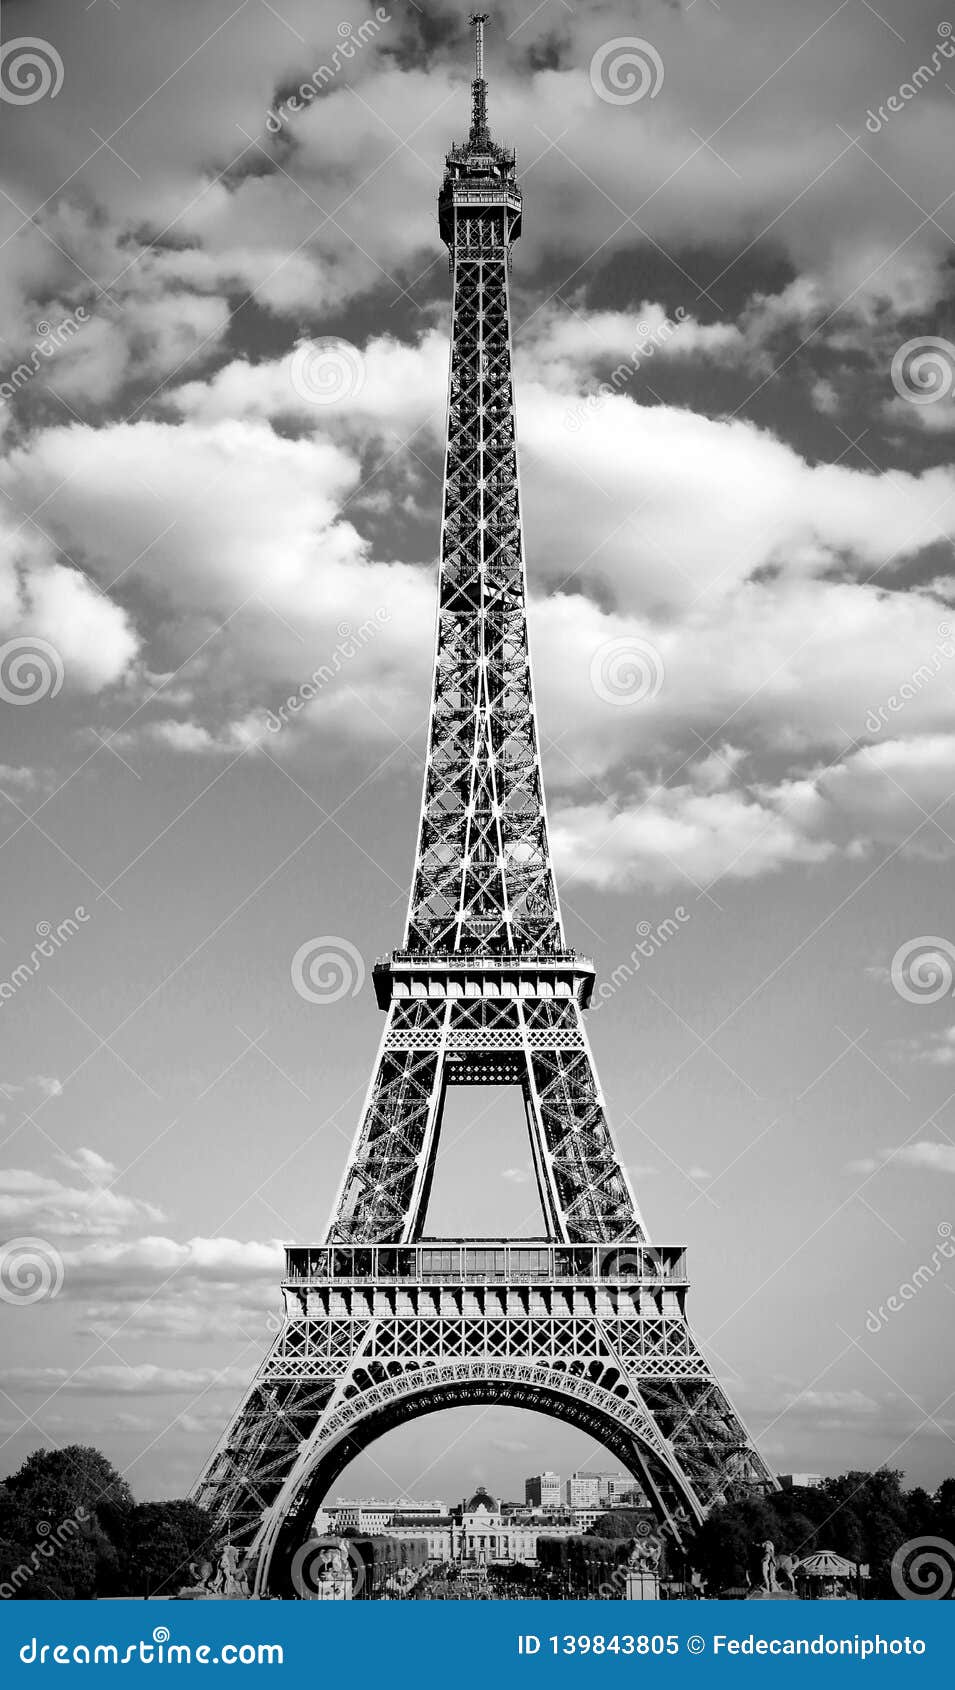 Simbolo Della Torre Eiffel Di Parigi In Francia In Bianco E Nero Immagine Stock Immagine Di Nero Torre